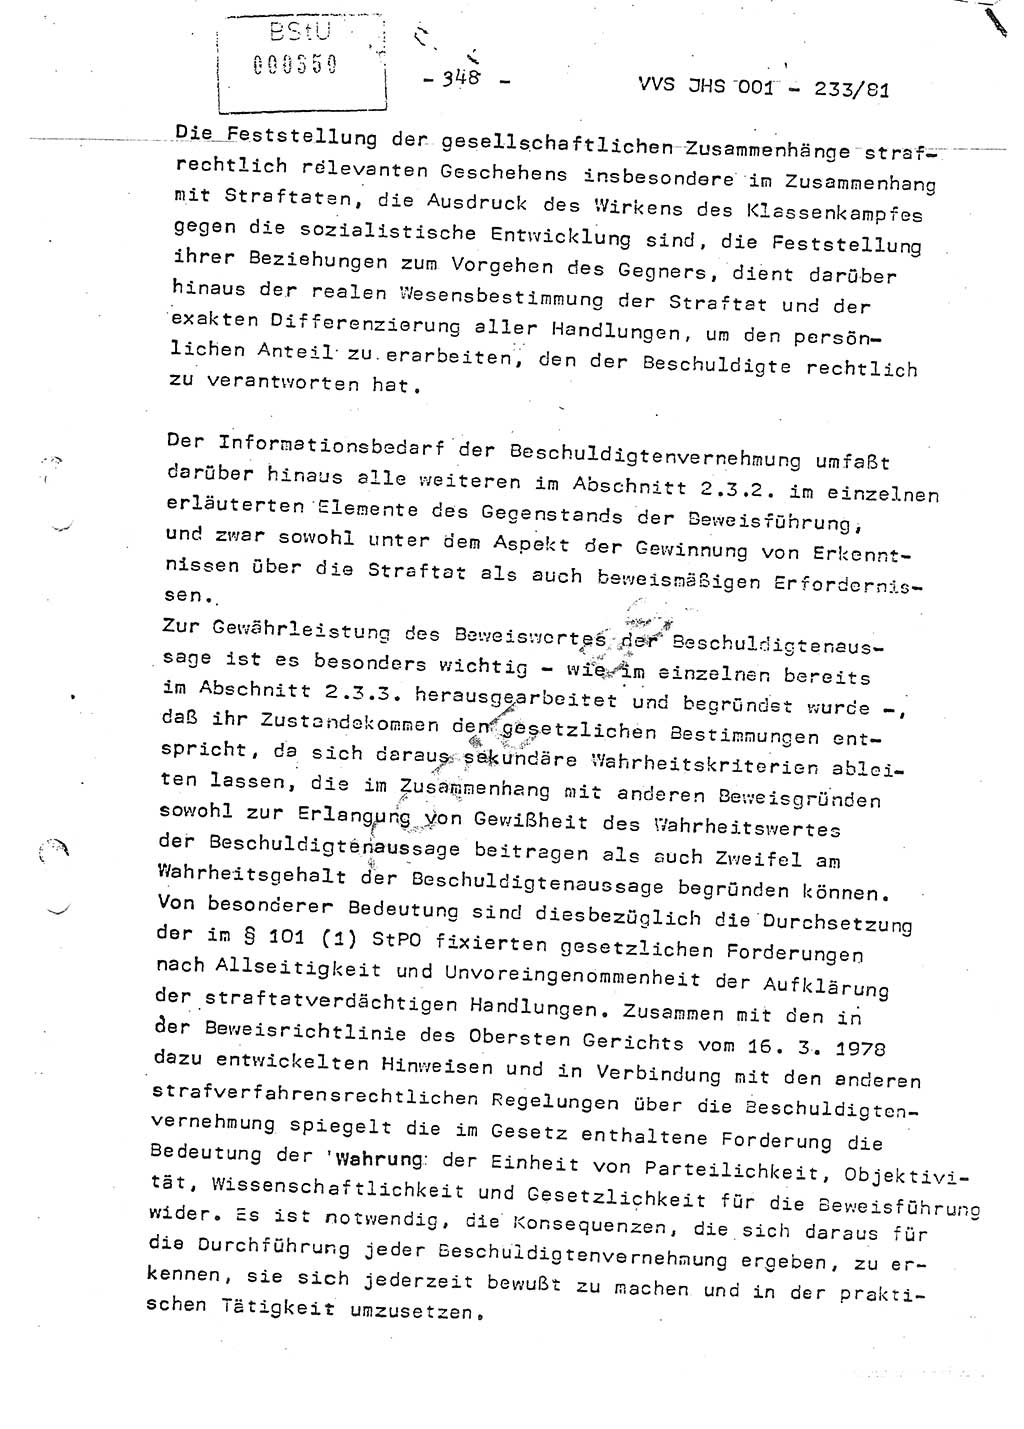 Dissertation Oberstleutnant Horst Zank (JHS), Oberstleutnant Dr. Karl-Heinz Knoblauch (JHS), Oberstleutnant Gustav-Adolf Kowalewski (HA Ⅸ), Oberstleutnant Wolfgang Plötner (HA Ⅸ), Ministerium für Staatssicherheit (MfS) [Deutsche Demokratische Republik (DDR)], Juristische Hochschule (JHS), Vertrauliche Verschlußsache (VVS) o001-233/81, Potsdam 1981, Blatt 348 (Diss. MfS DDR JHS VVS o001-233/81 1981, Bl. 348)